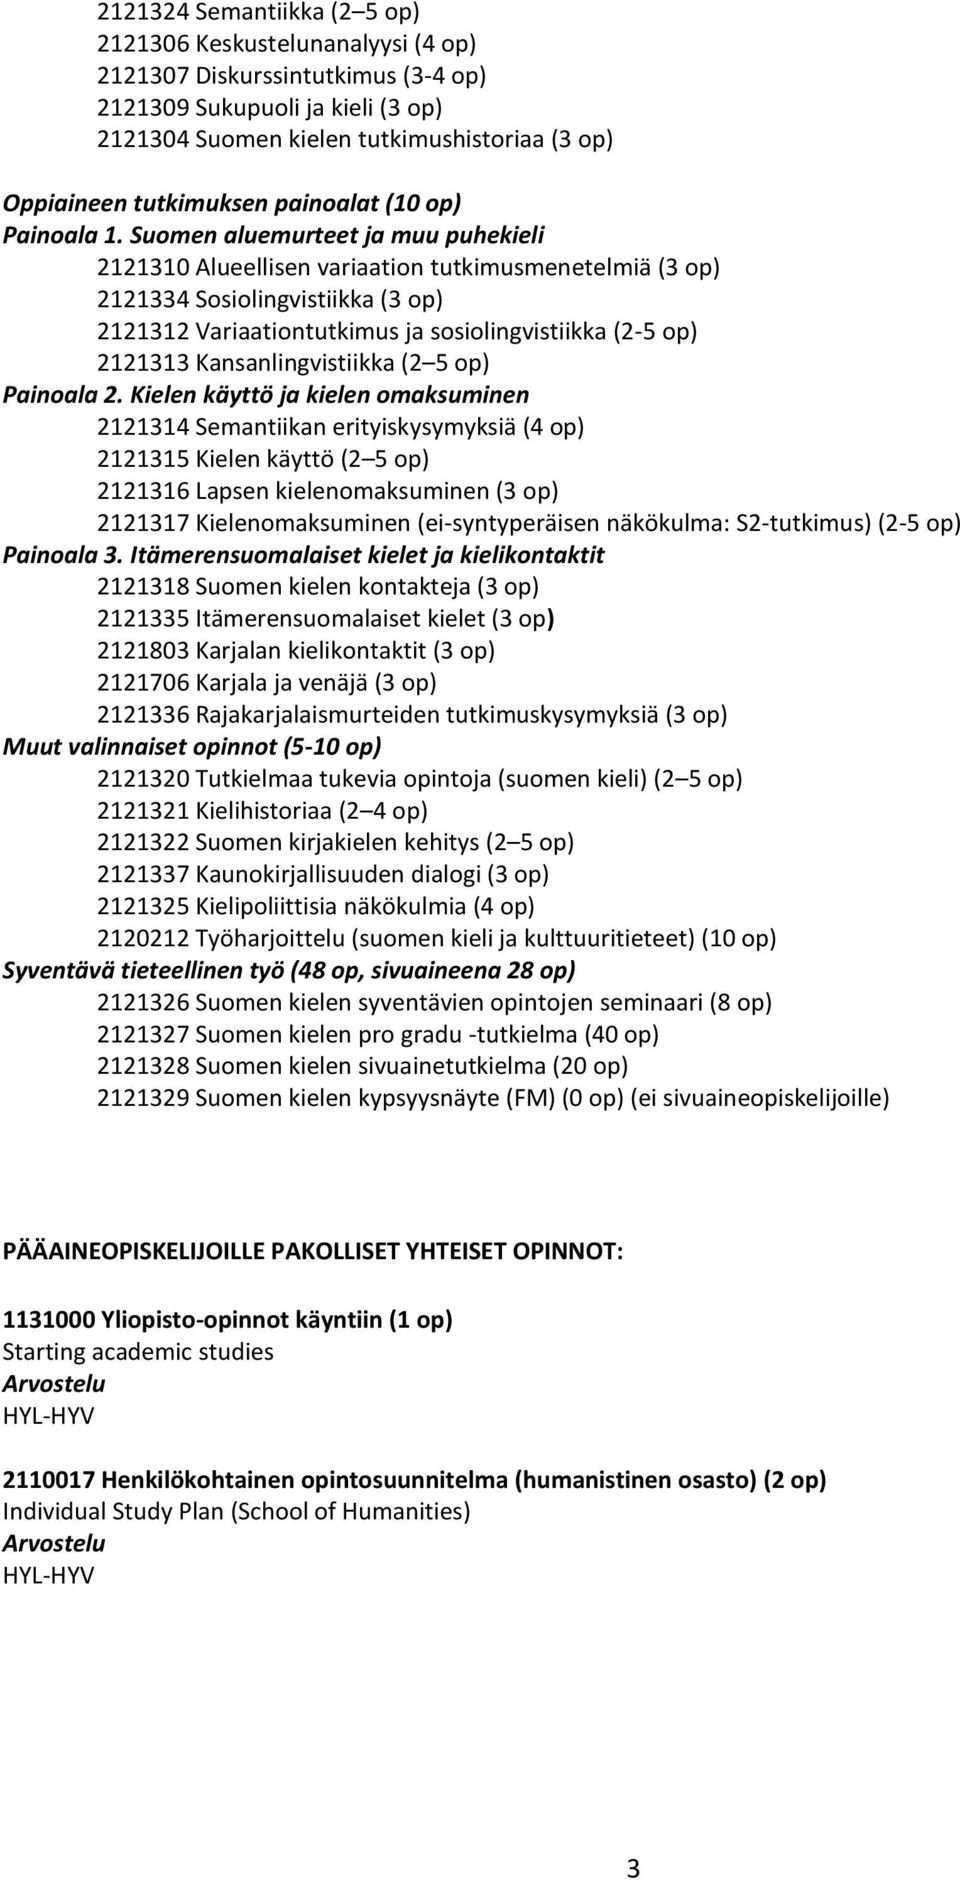 Suomen aluemurteet ja muu puhekieli 2121310 Alueellisen variaation tutkimusmenetelmiä (3 op) 2121334 Sosiolingvistiikka (3 op) 2121312 Variaationtutkimus ja sosiolingvistiikka (2-5 op) 2121313